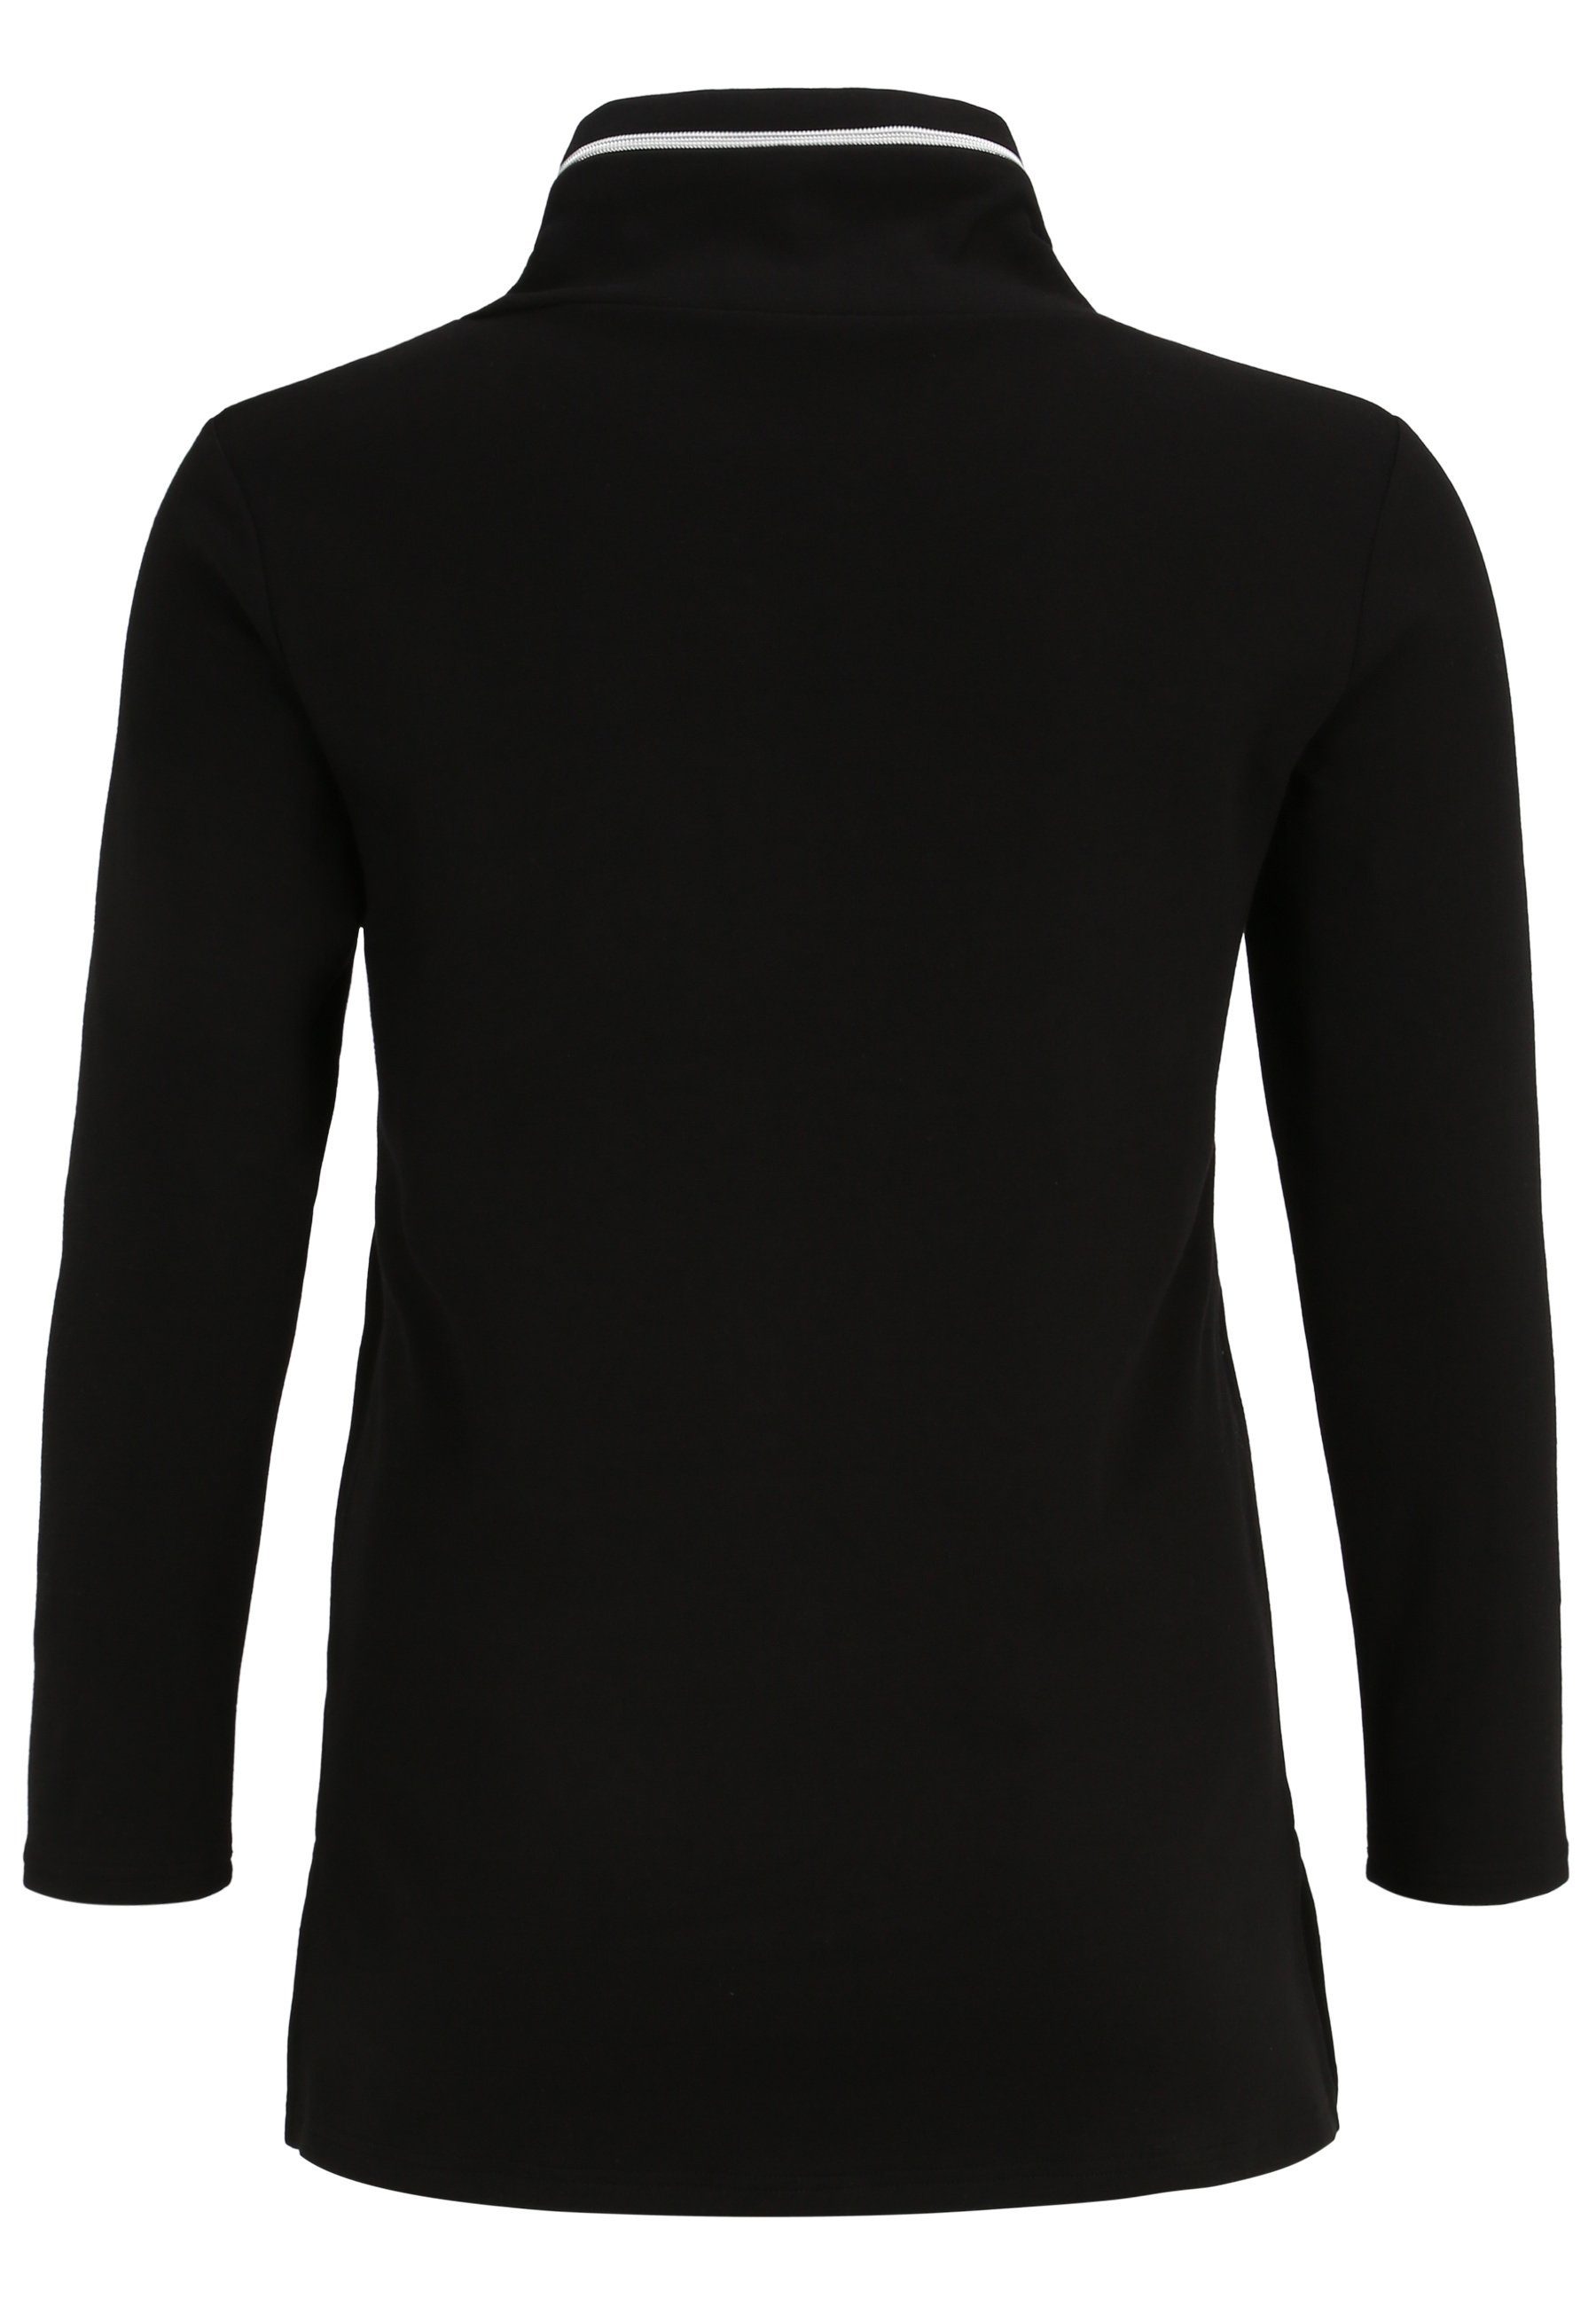 Doris Streich Longshirt Sweatshirt schwarz/weiss Design modernem Nylon-Tasche mit mit und Motivprint